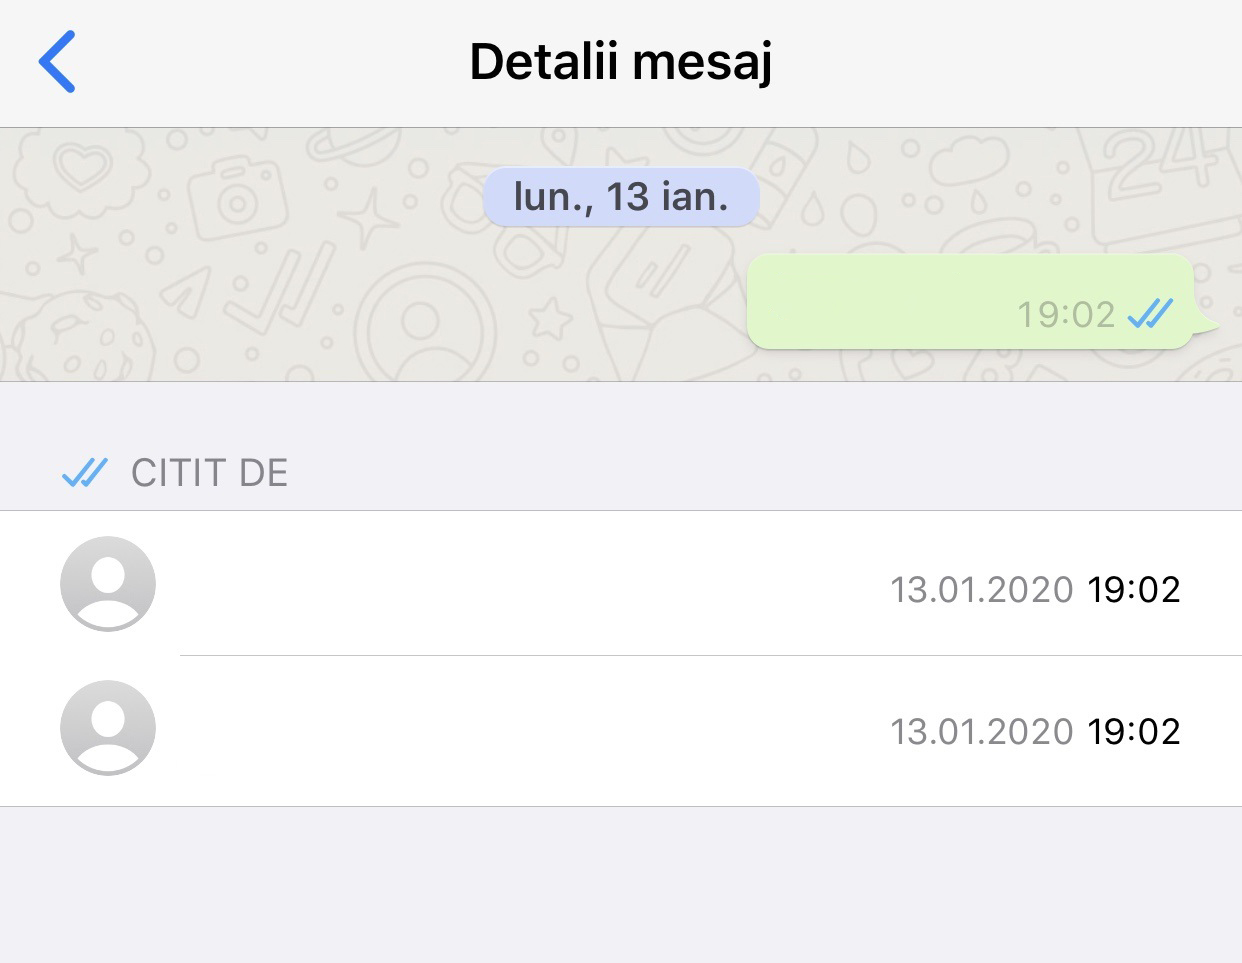 confirmaciones de lectura de mensajes grupales de whatsapp